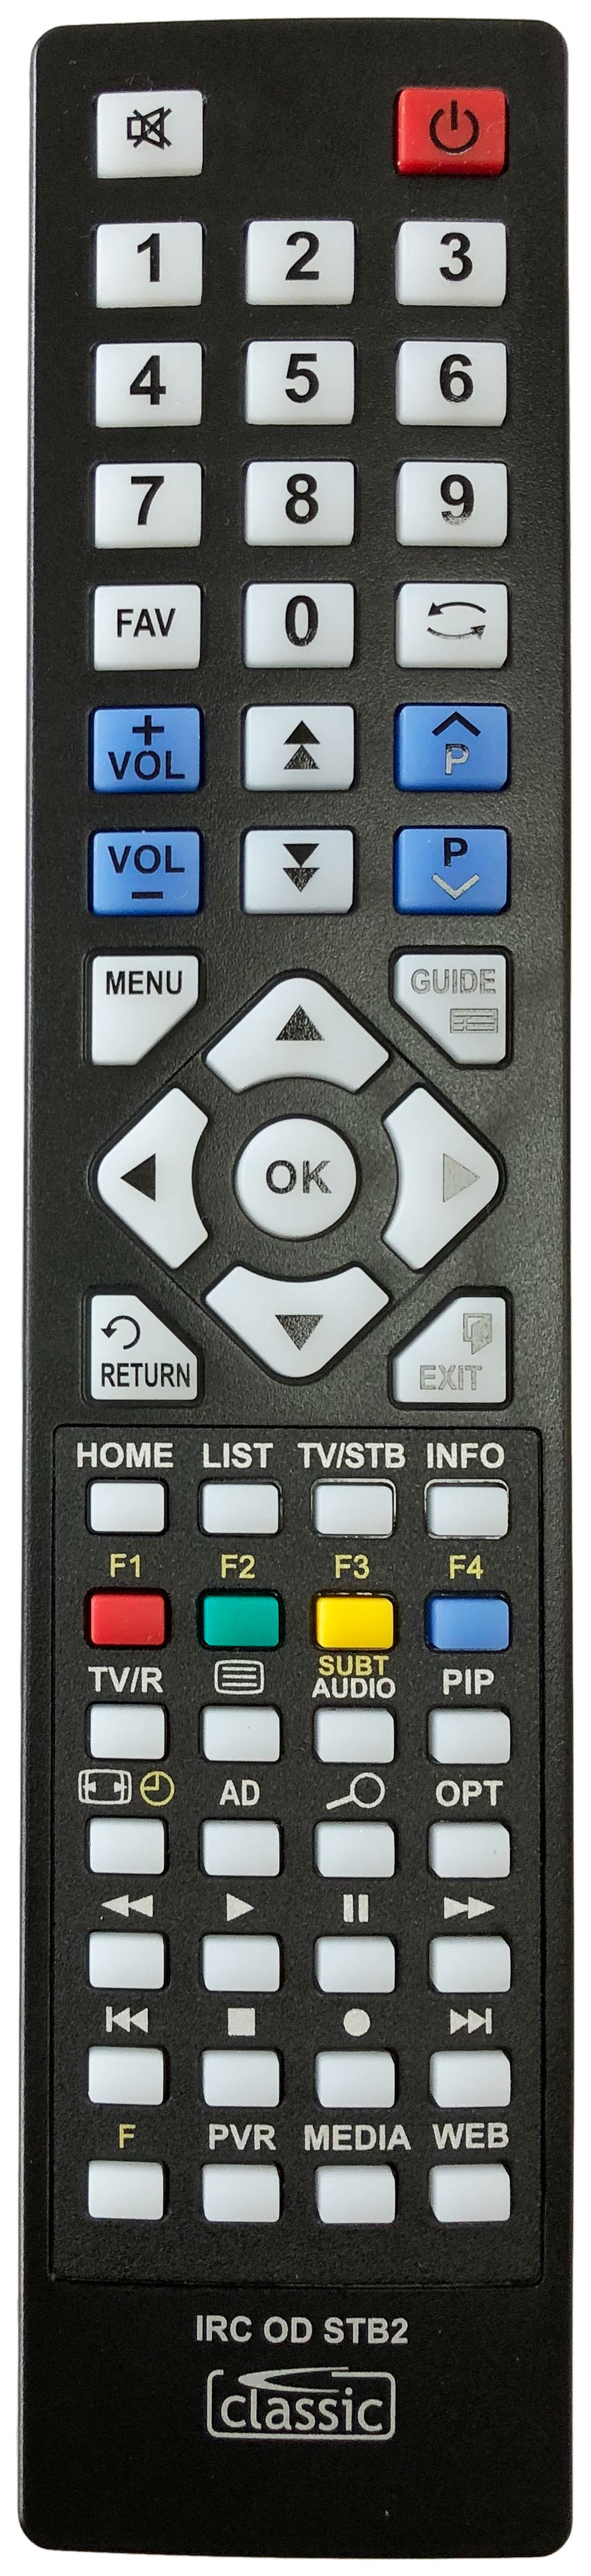 LOGISAT C0201 Remote Control